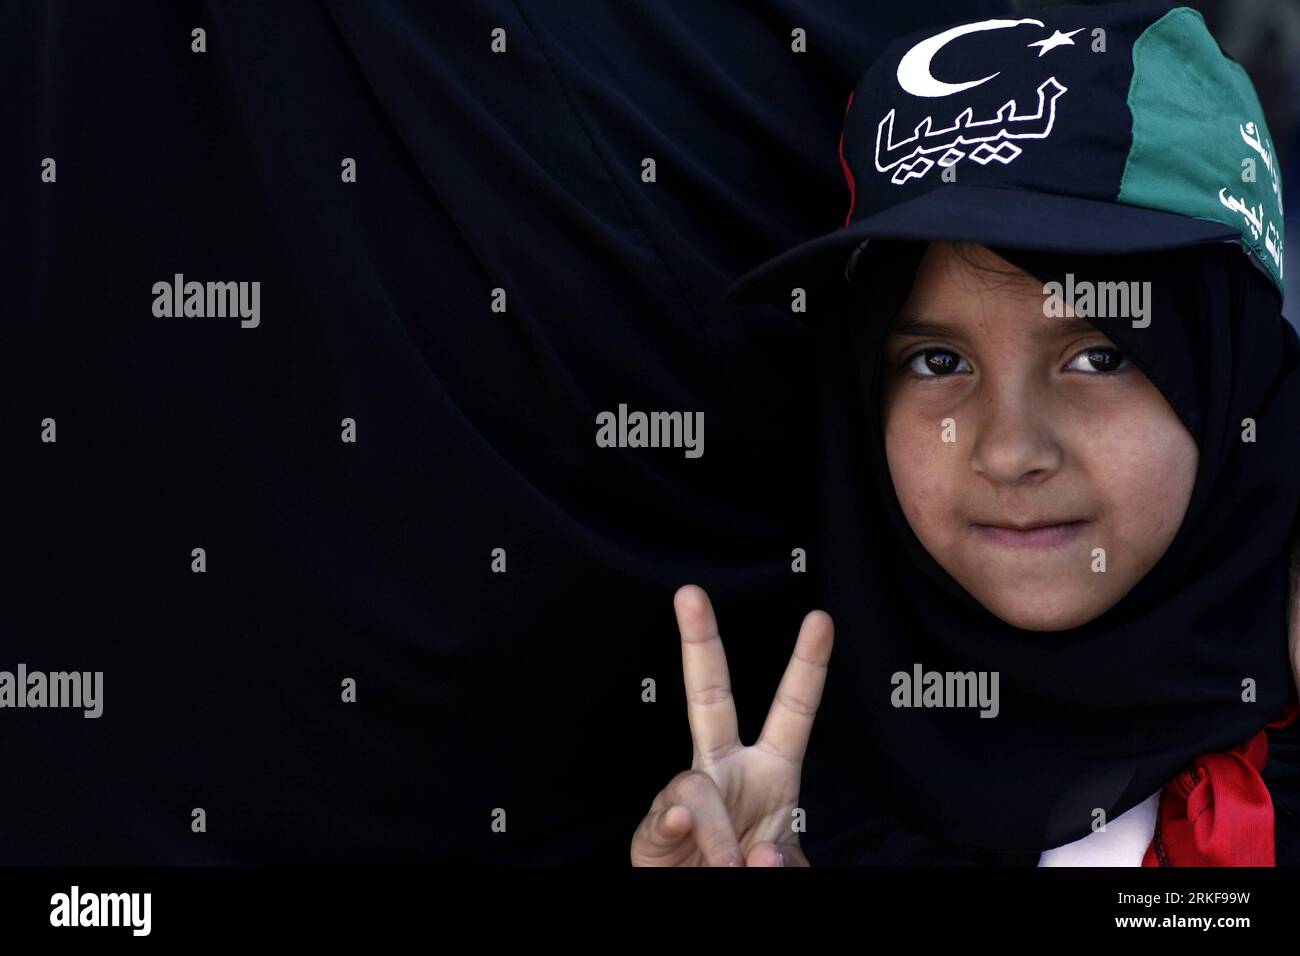 Bildnummer : 55379066 Datum : 20.05.2011 Copyright : imago/Xinhua (110521) -- BENGHAZI, 21 mai 2011 (Xinhua) -- Une jeune fille libyenne lance un signe de victoire en soutien à l'opposition lors d'un rassemblement contre le dirigeant libyen Mouammar Kadhafi sur la place de la Révolution dans le bastion rebelle de Benghazi le 20 mai 2011. (Xinhua/Wissam Nassar) (lhh) LIBYA-BENGHAZI-OPPOSITION PARTISANS PUBLICATIONxNOTxINxCHN Gesellschaft Politik Demo Protest Libyen kbdig xdp premiumd 2011 quer o0 Kind, Mädchen, Victory Gestik Bildnummer 55379066 Date 20 05 2011 Copyright Imago XINHUA Benghazi Mai 21 2011 XINHUA A. Banque D'Images